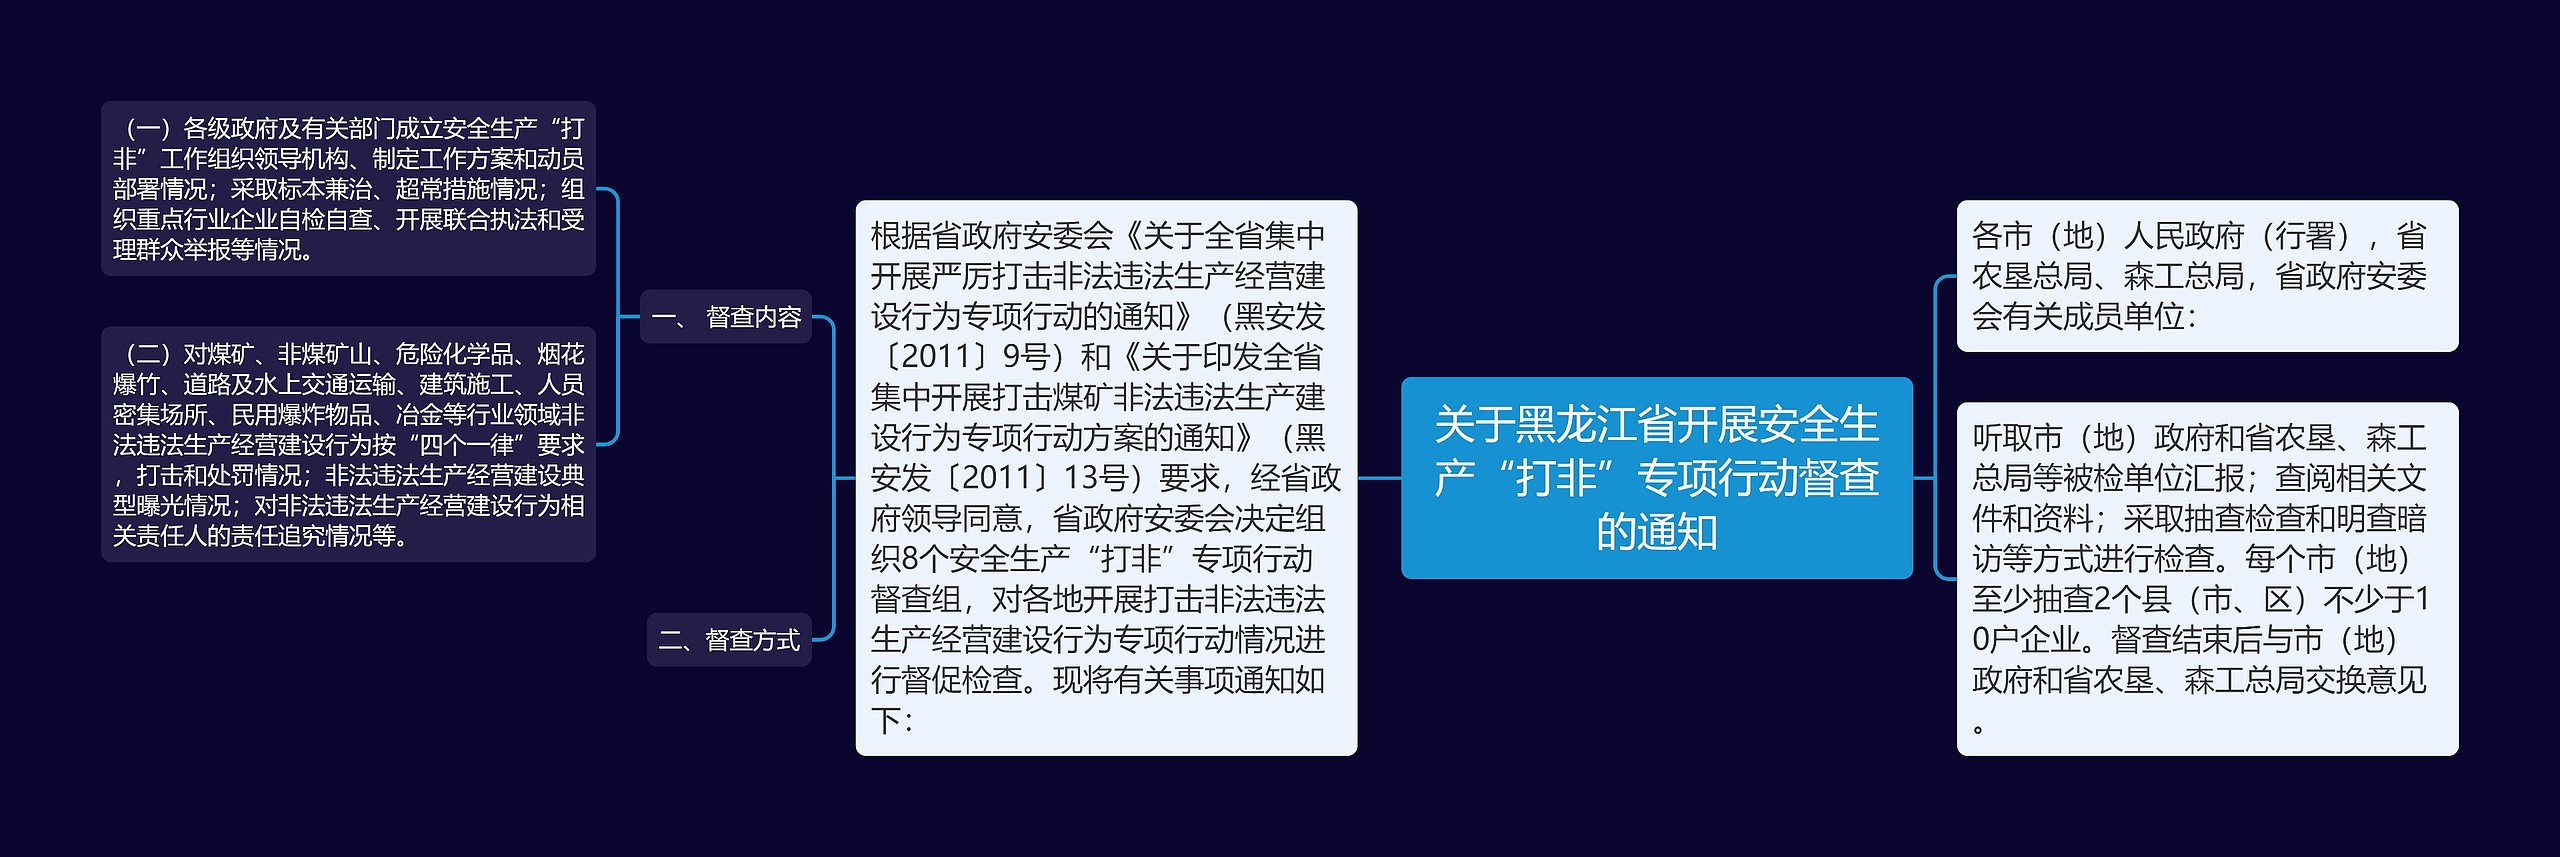 关于黑龙江省开展安全生产“打非”专项行动督查的通知